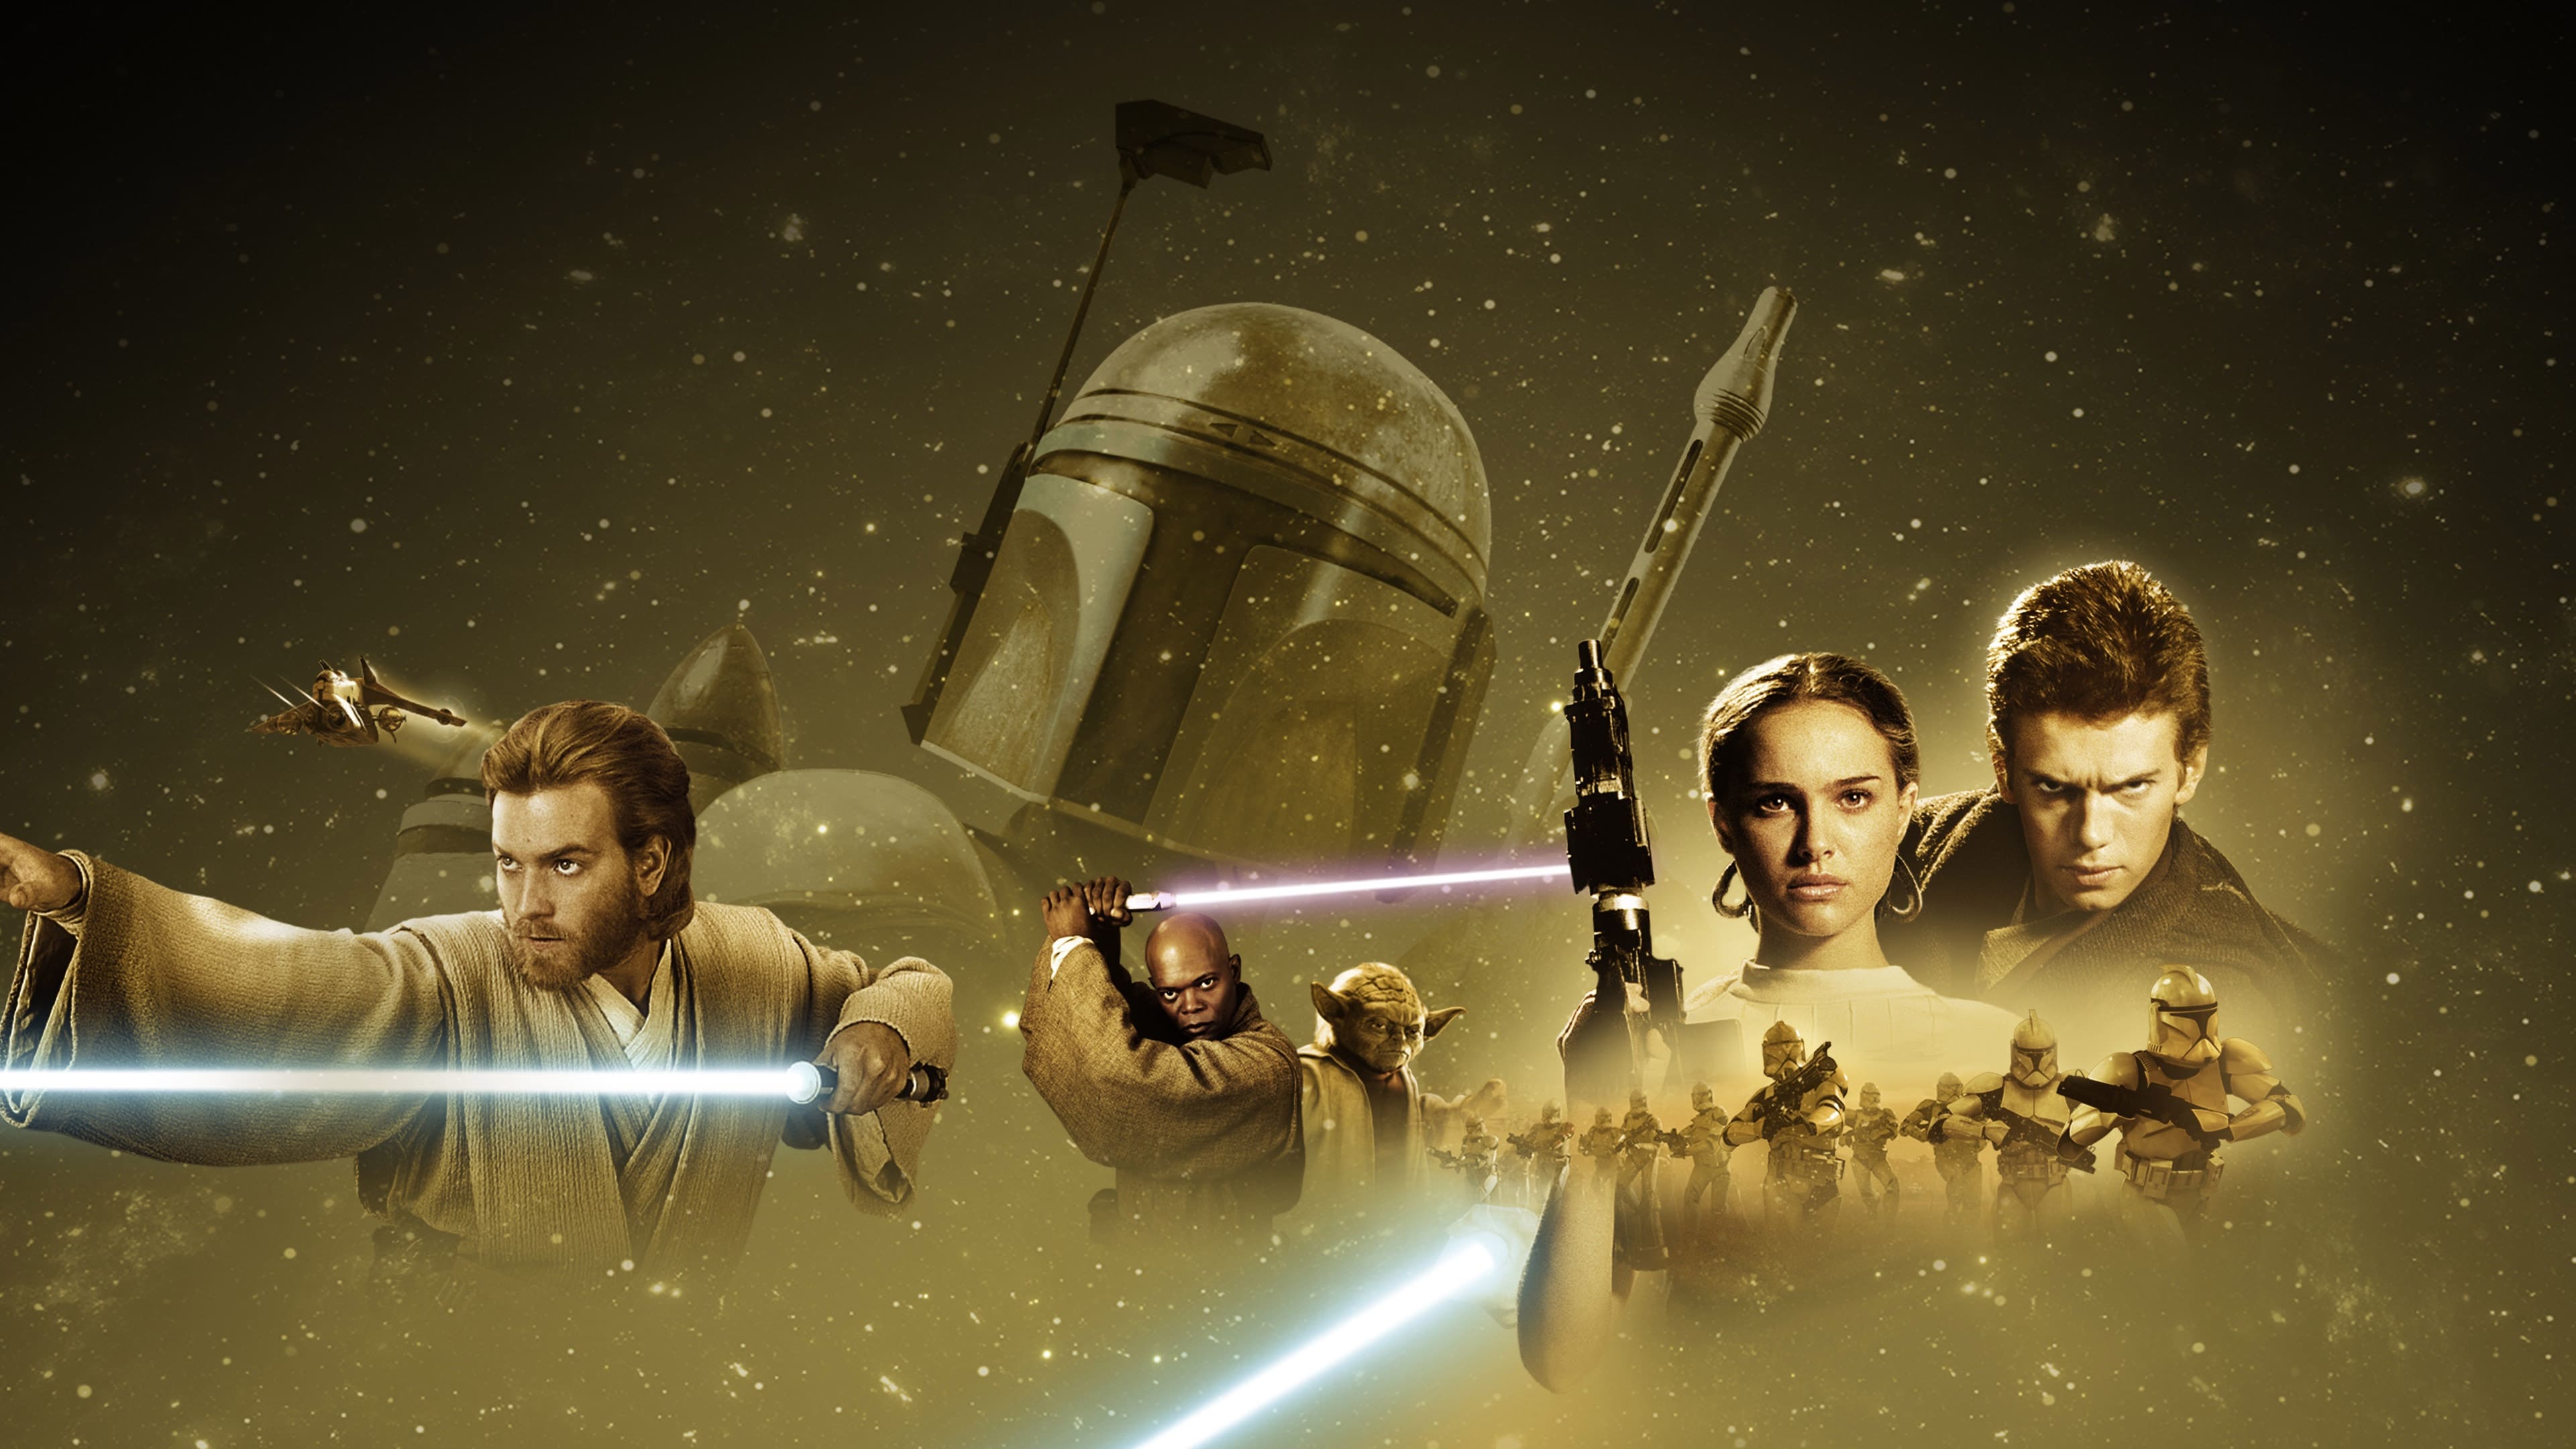 Chiến Tranh Giữa Các Vì Sao 2: Cuộc Tấn Công Của Người Vô Tính - Star Wars: Episode Ii - Attack Of The Clones